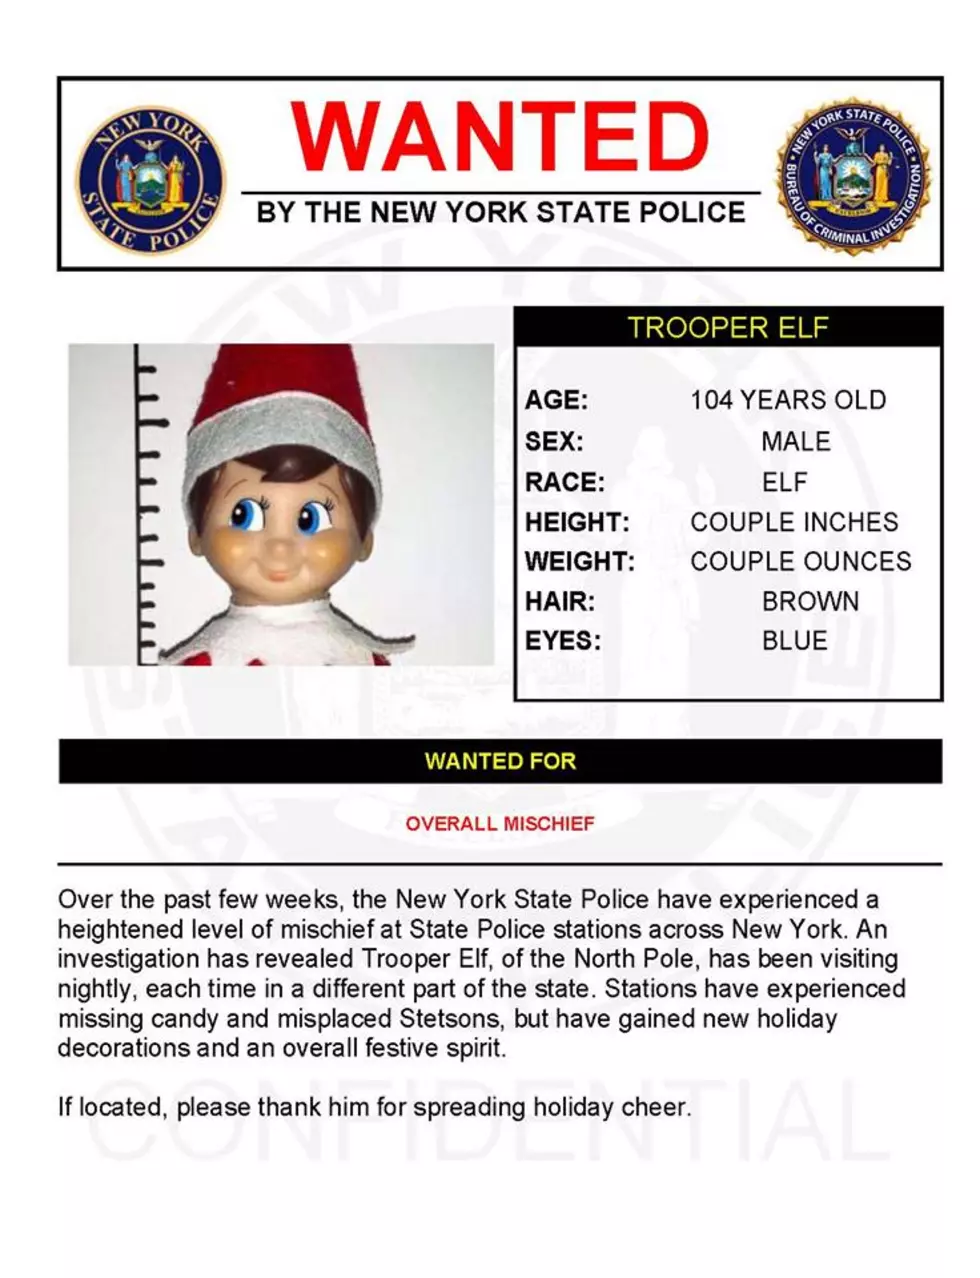 Warrant Wednesday: Trooper Elf Wanted For Overall Mischief